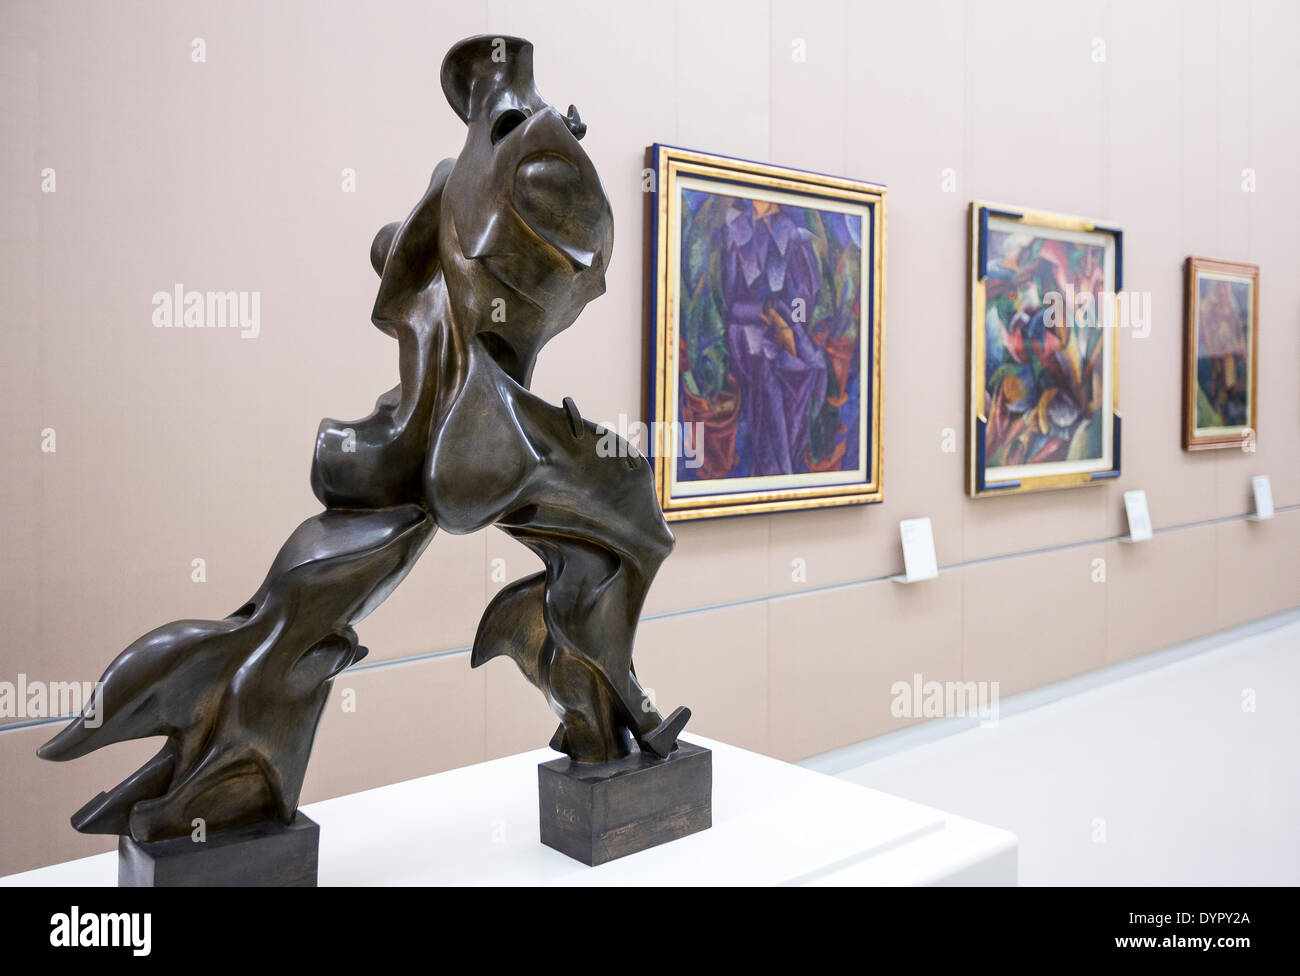 Milan, Italie. 23 avr, 2014 Umberto Boccioni une sculpture dans le Musée du xxe siècle : crédit facile vraiment Star/Alamy Live News Banque D'Images